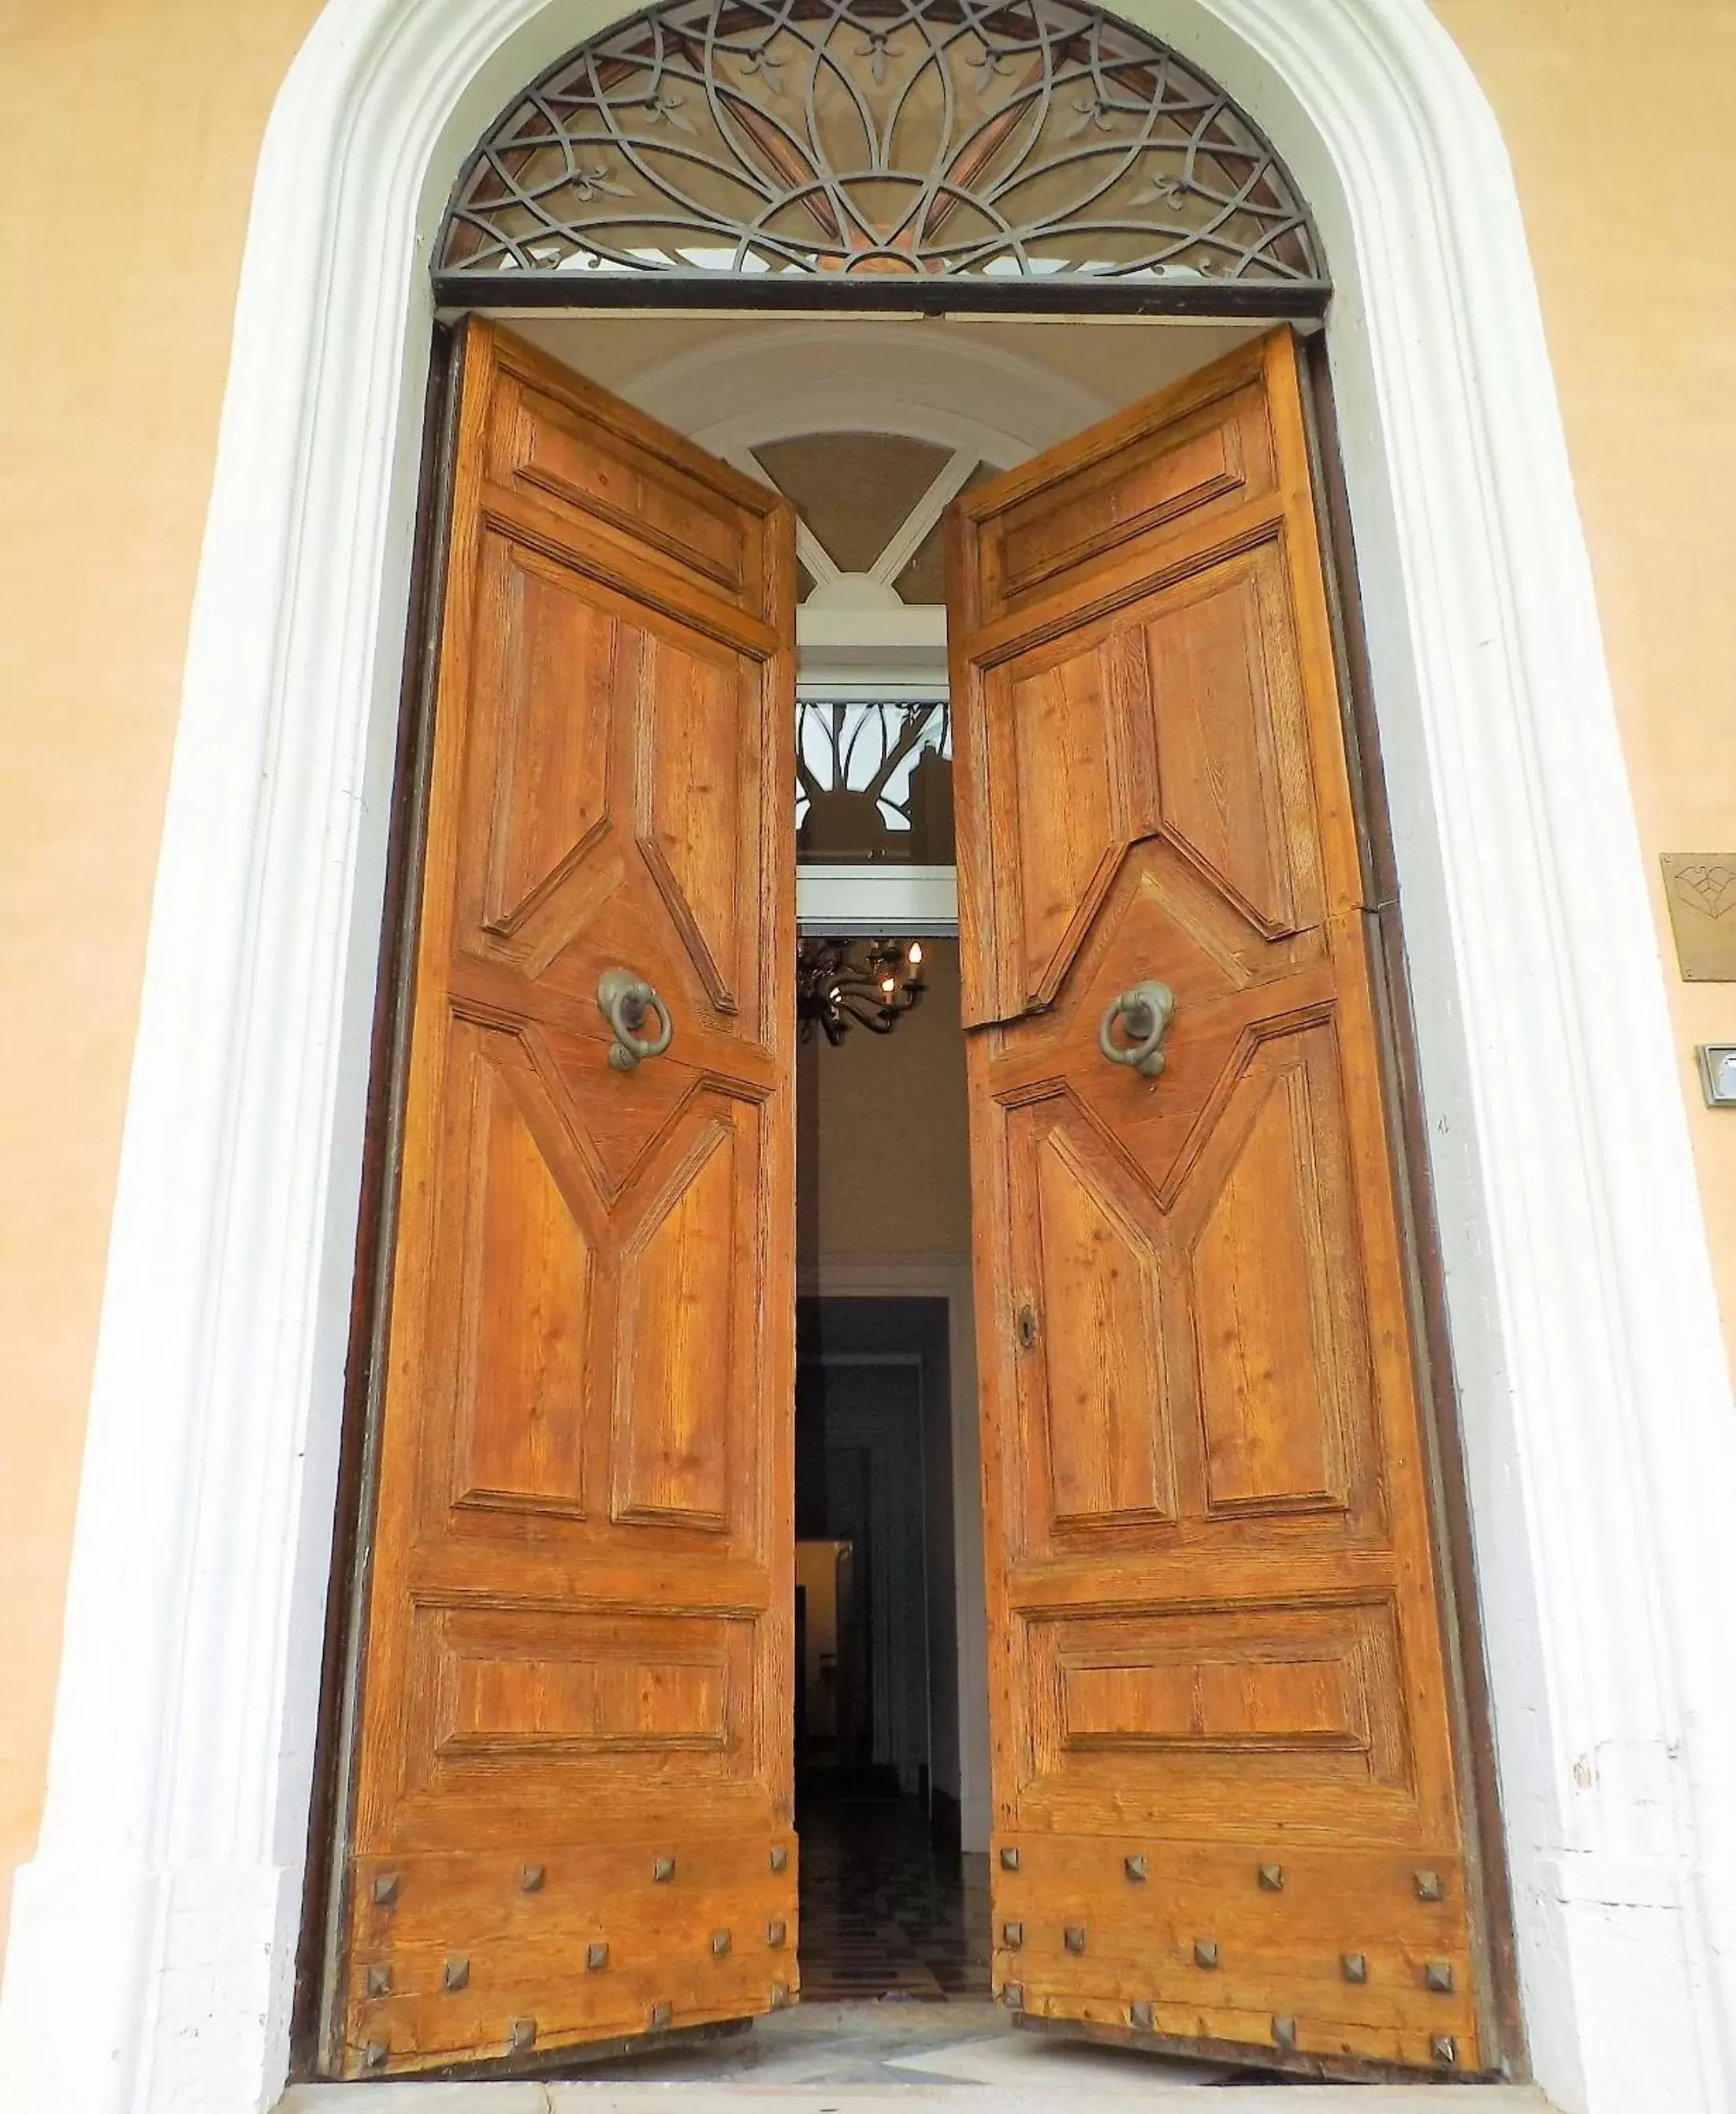 Facade/Entrance in Tenuta Villa Colle Sereno